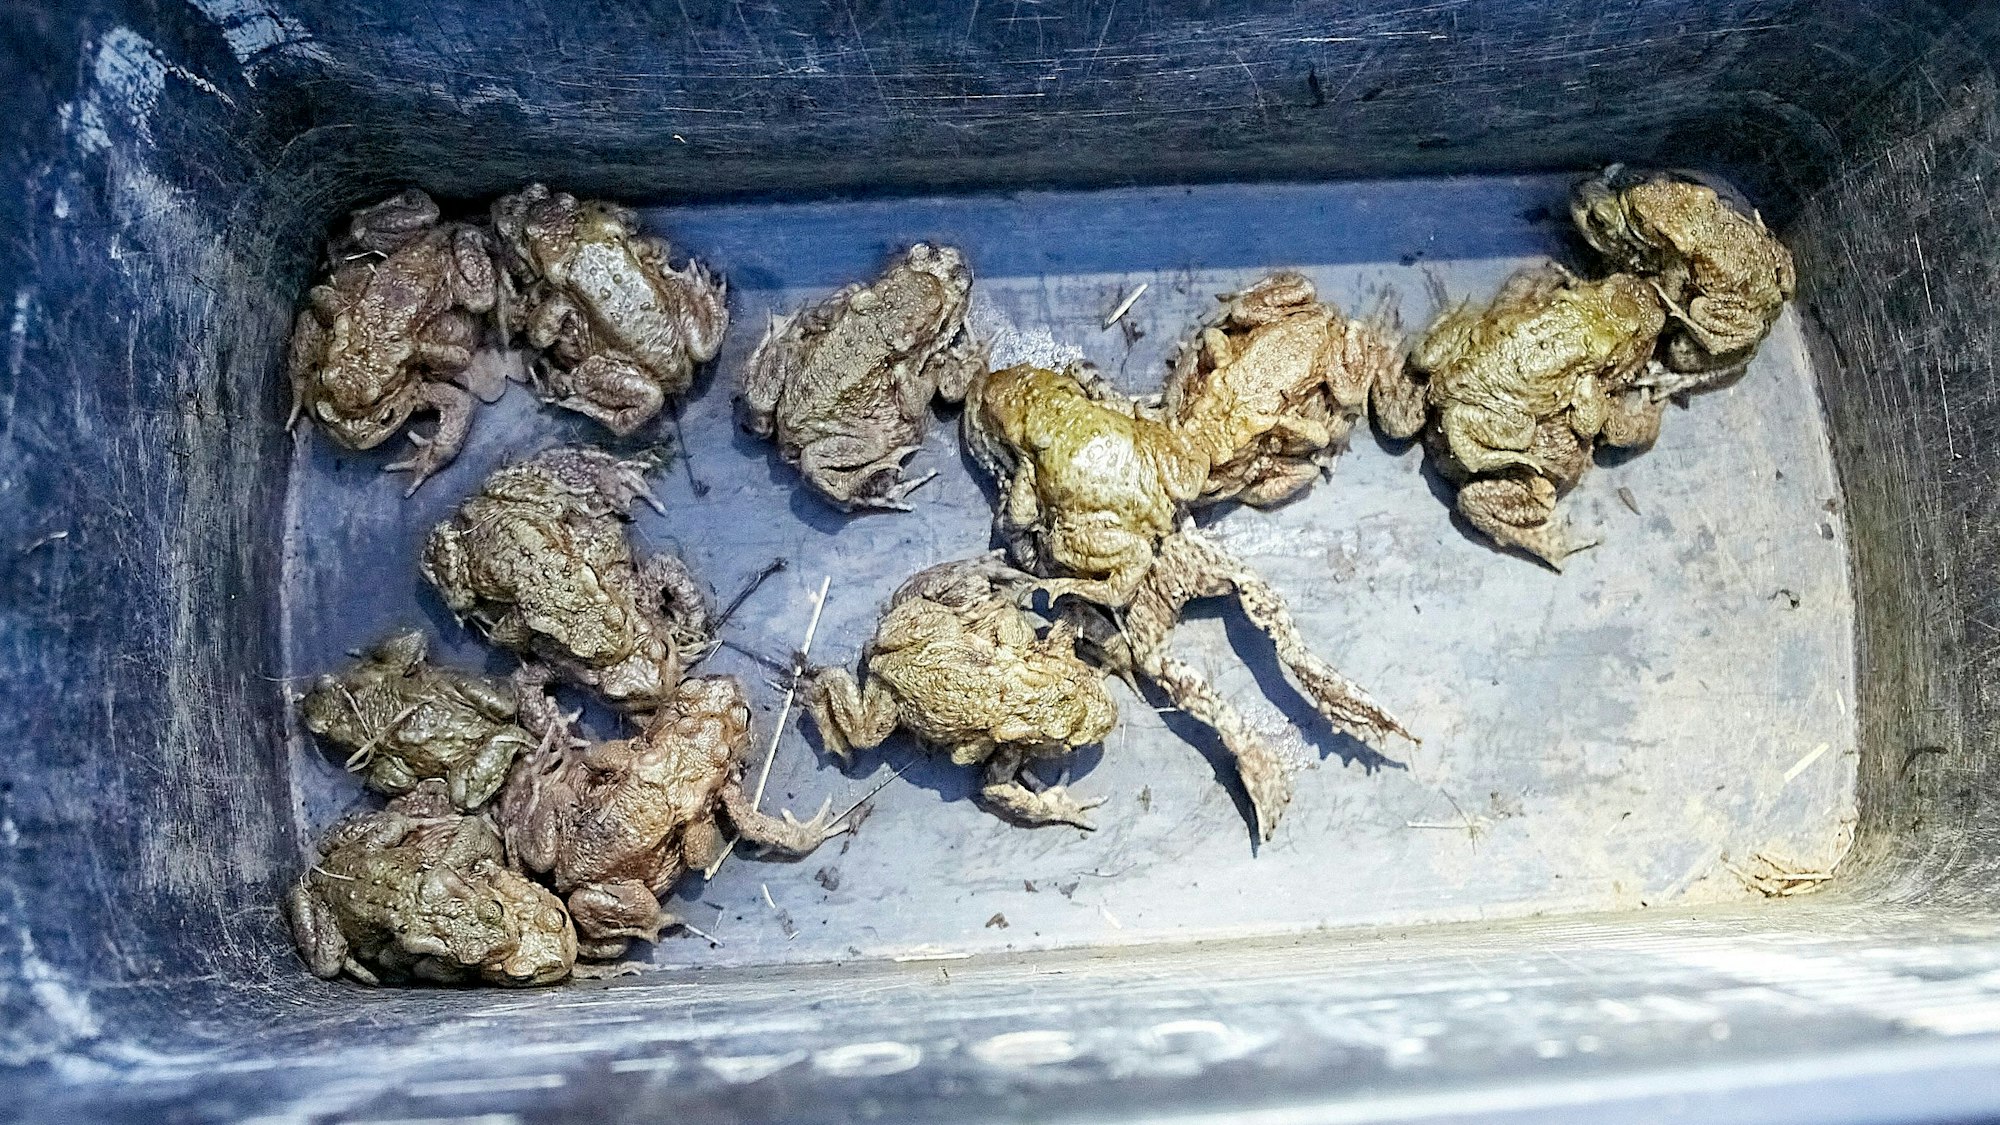 Zahlreiche Kröten wurden in einem Eimer gesammelt, um sie über die Straße zu tragen.